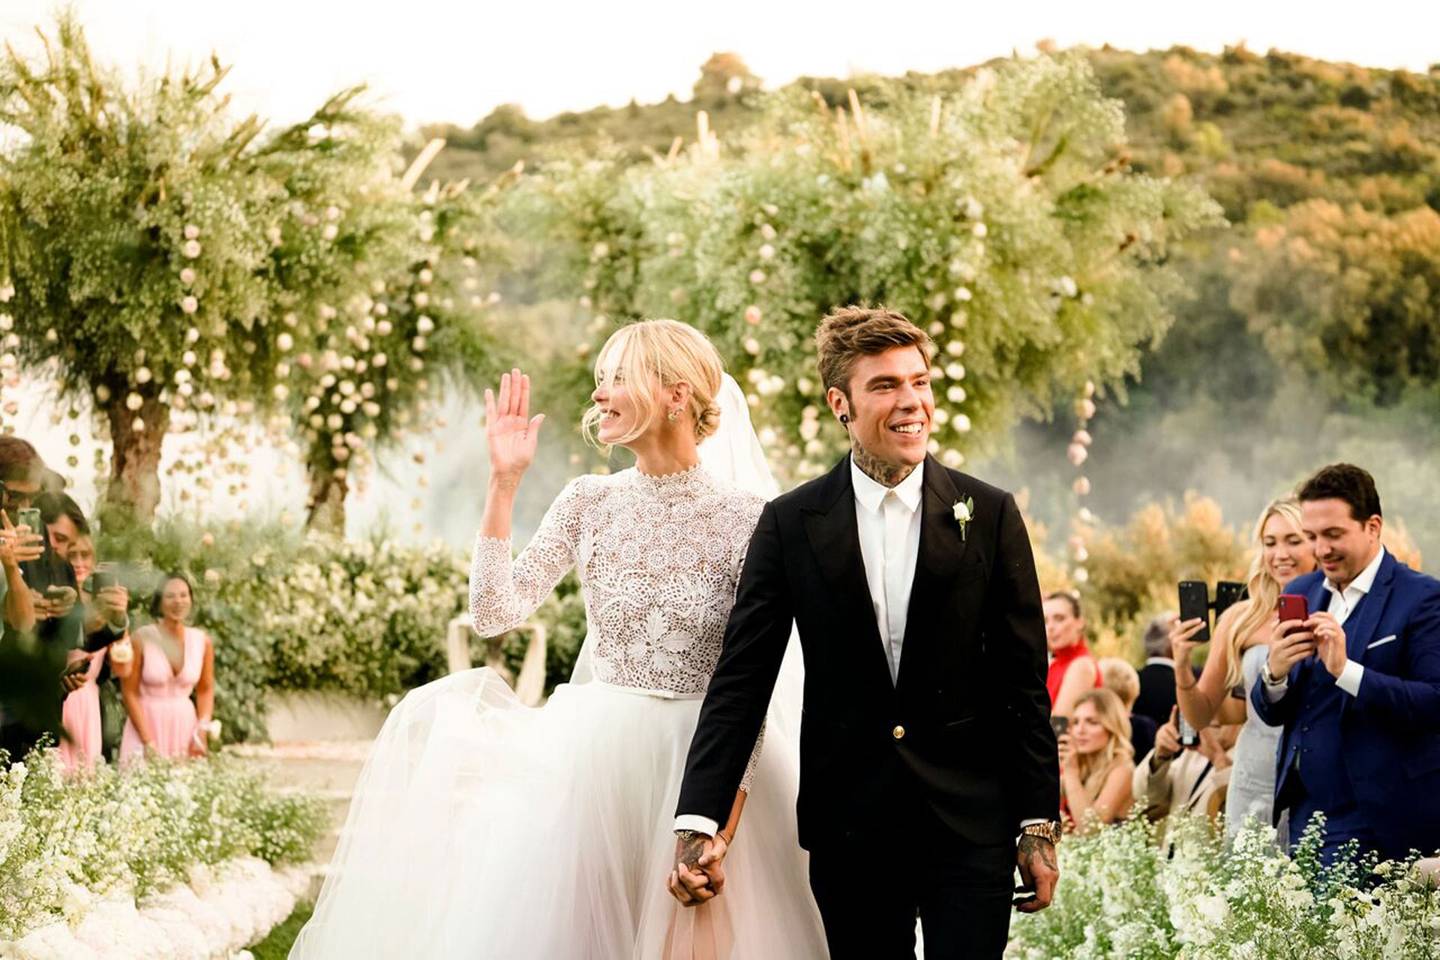 Why Chiara Ferragni's Wedding Was The Wedding Of The Year